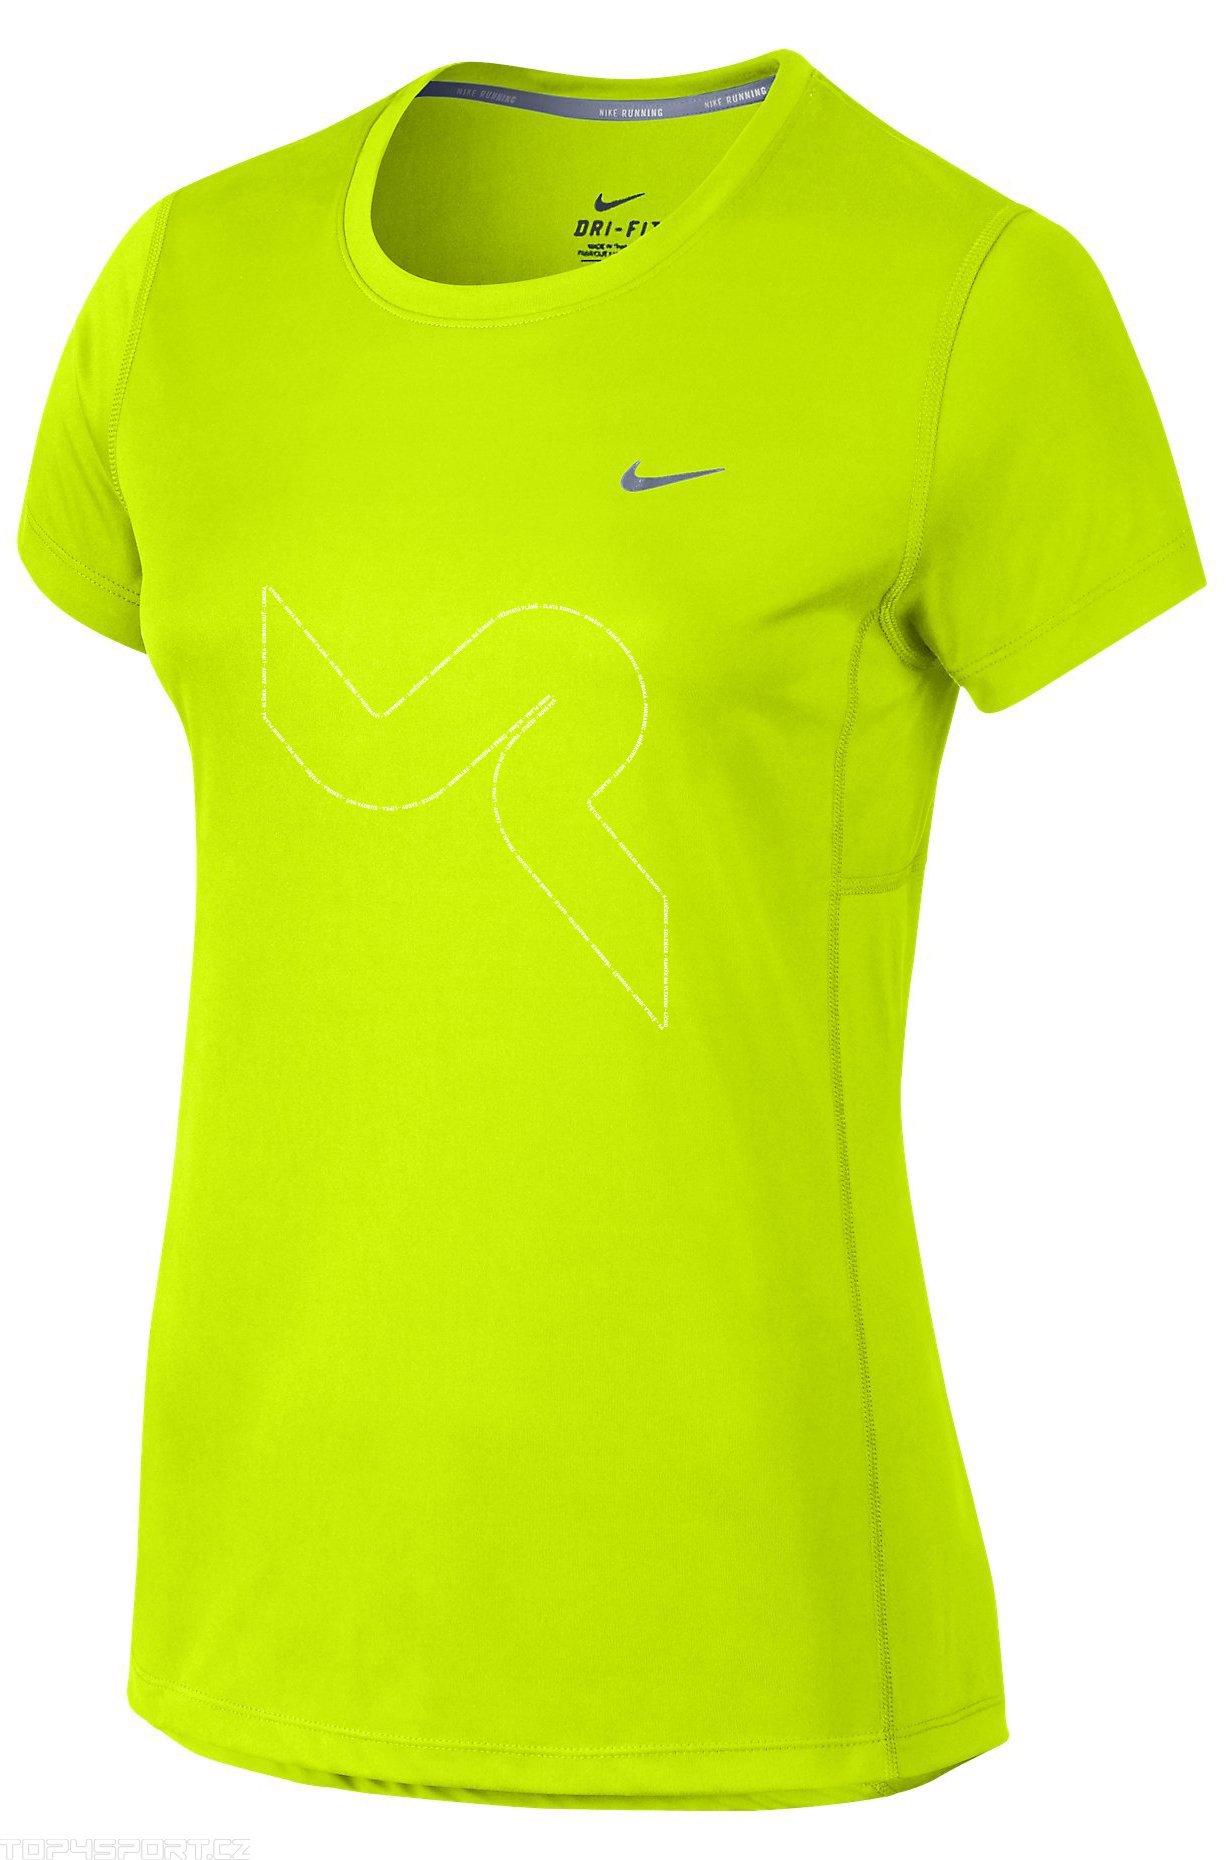 Dámské běžecké triko s krátkým rukávem Nike MILER VLTAVA RUN